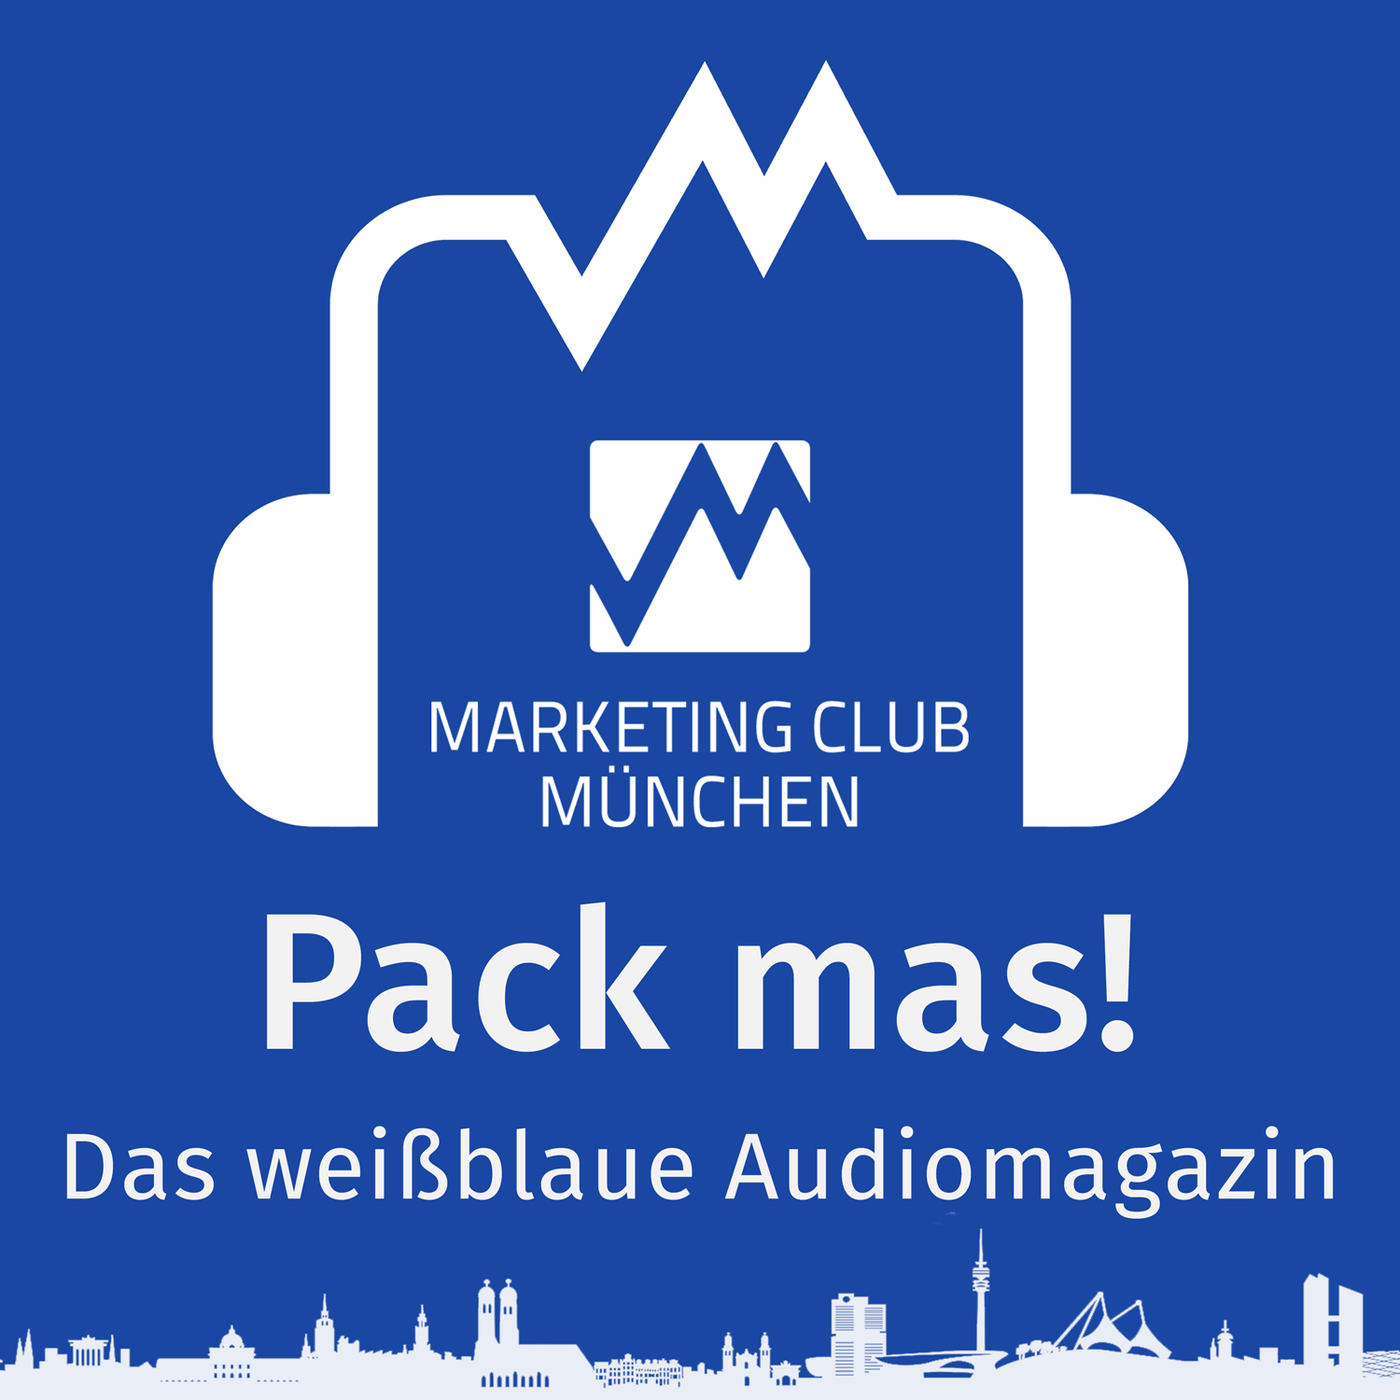 Pack ma's! Das weißblaue Audiomagazin